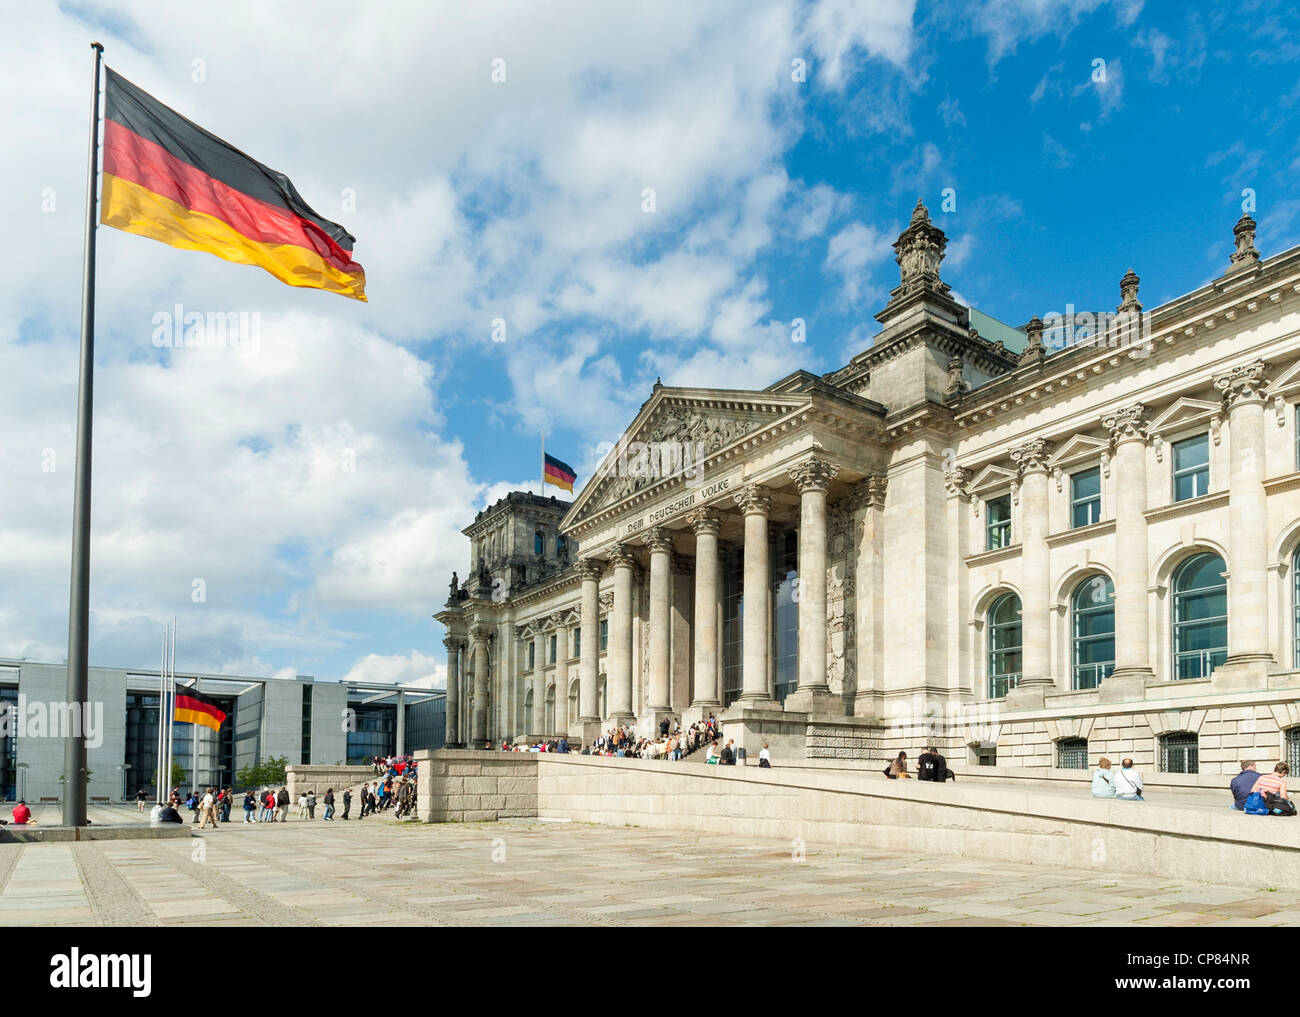 Reichstag, Berlín, Alemania - El edificio del parlamento alemán con bandera alemana Foto de stock